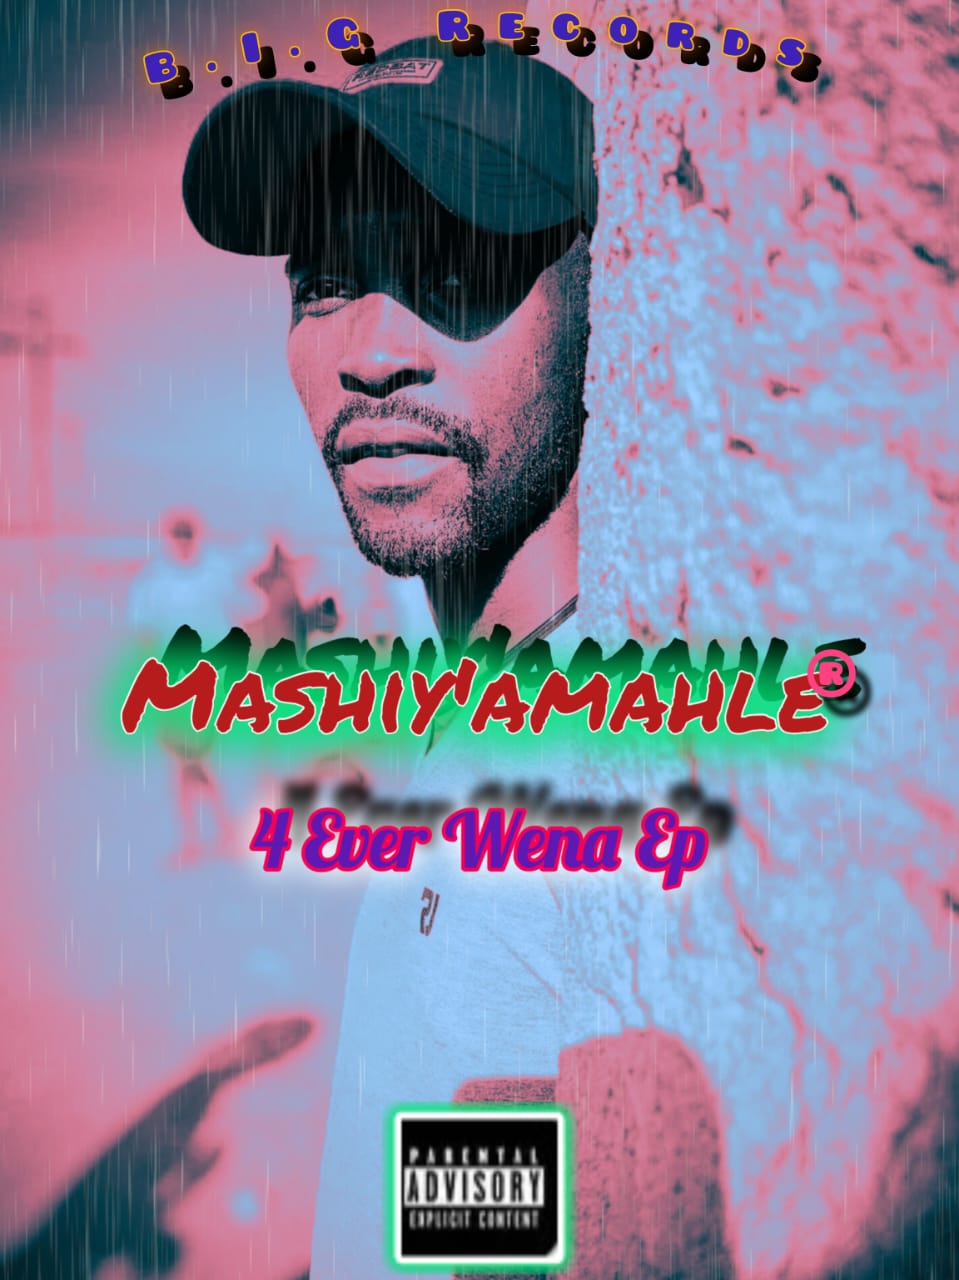 Never 4get - Mashiyamahle ft Young Slave